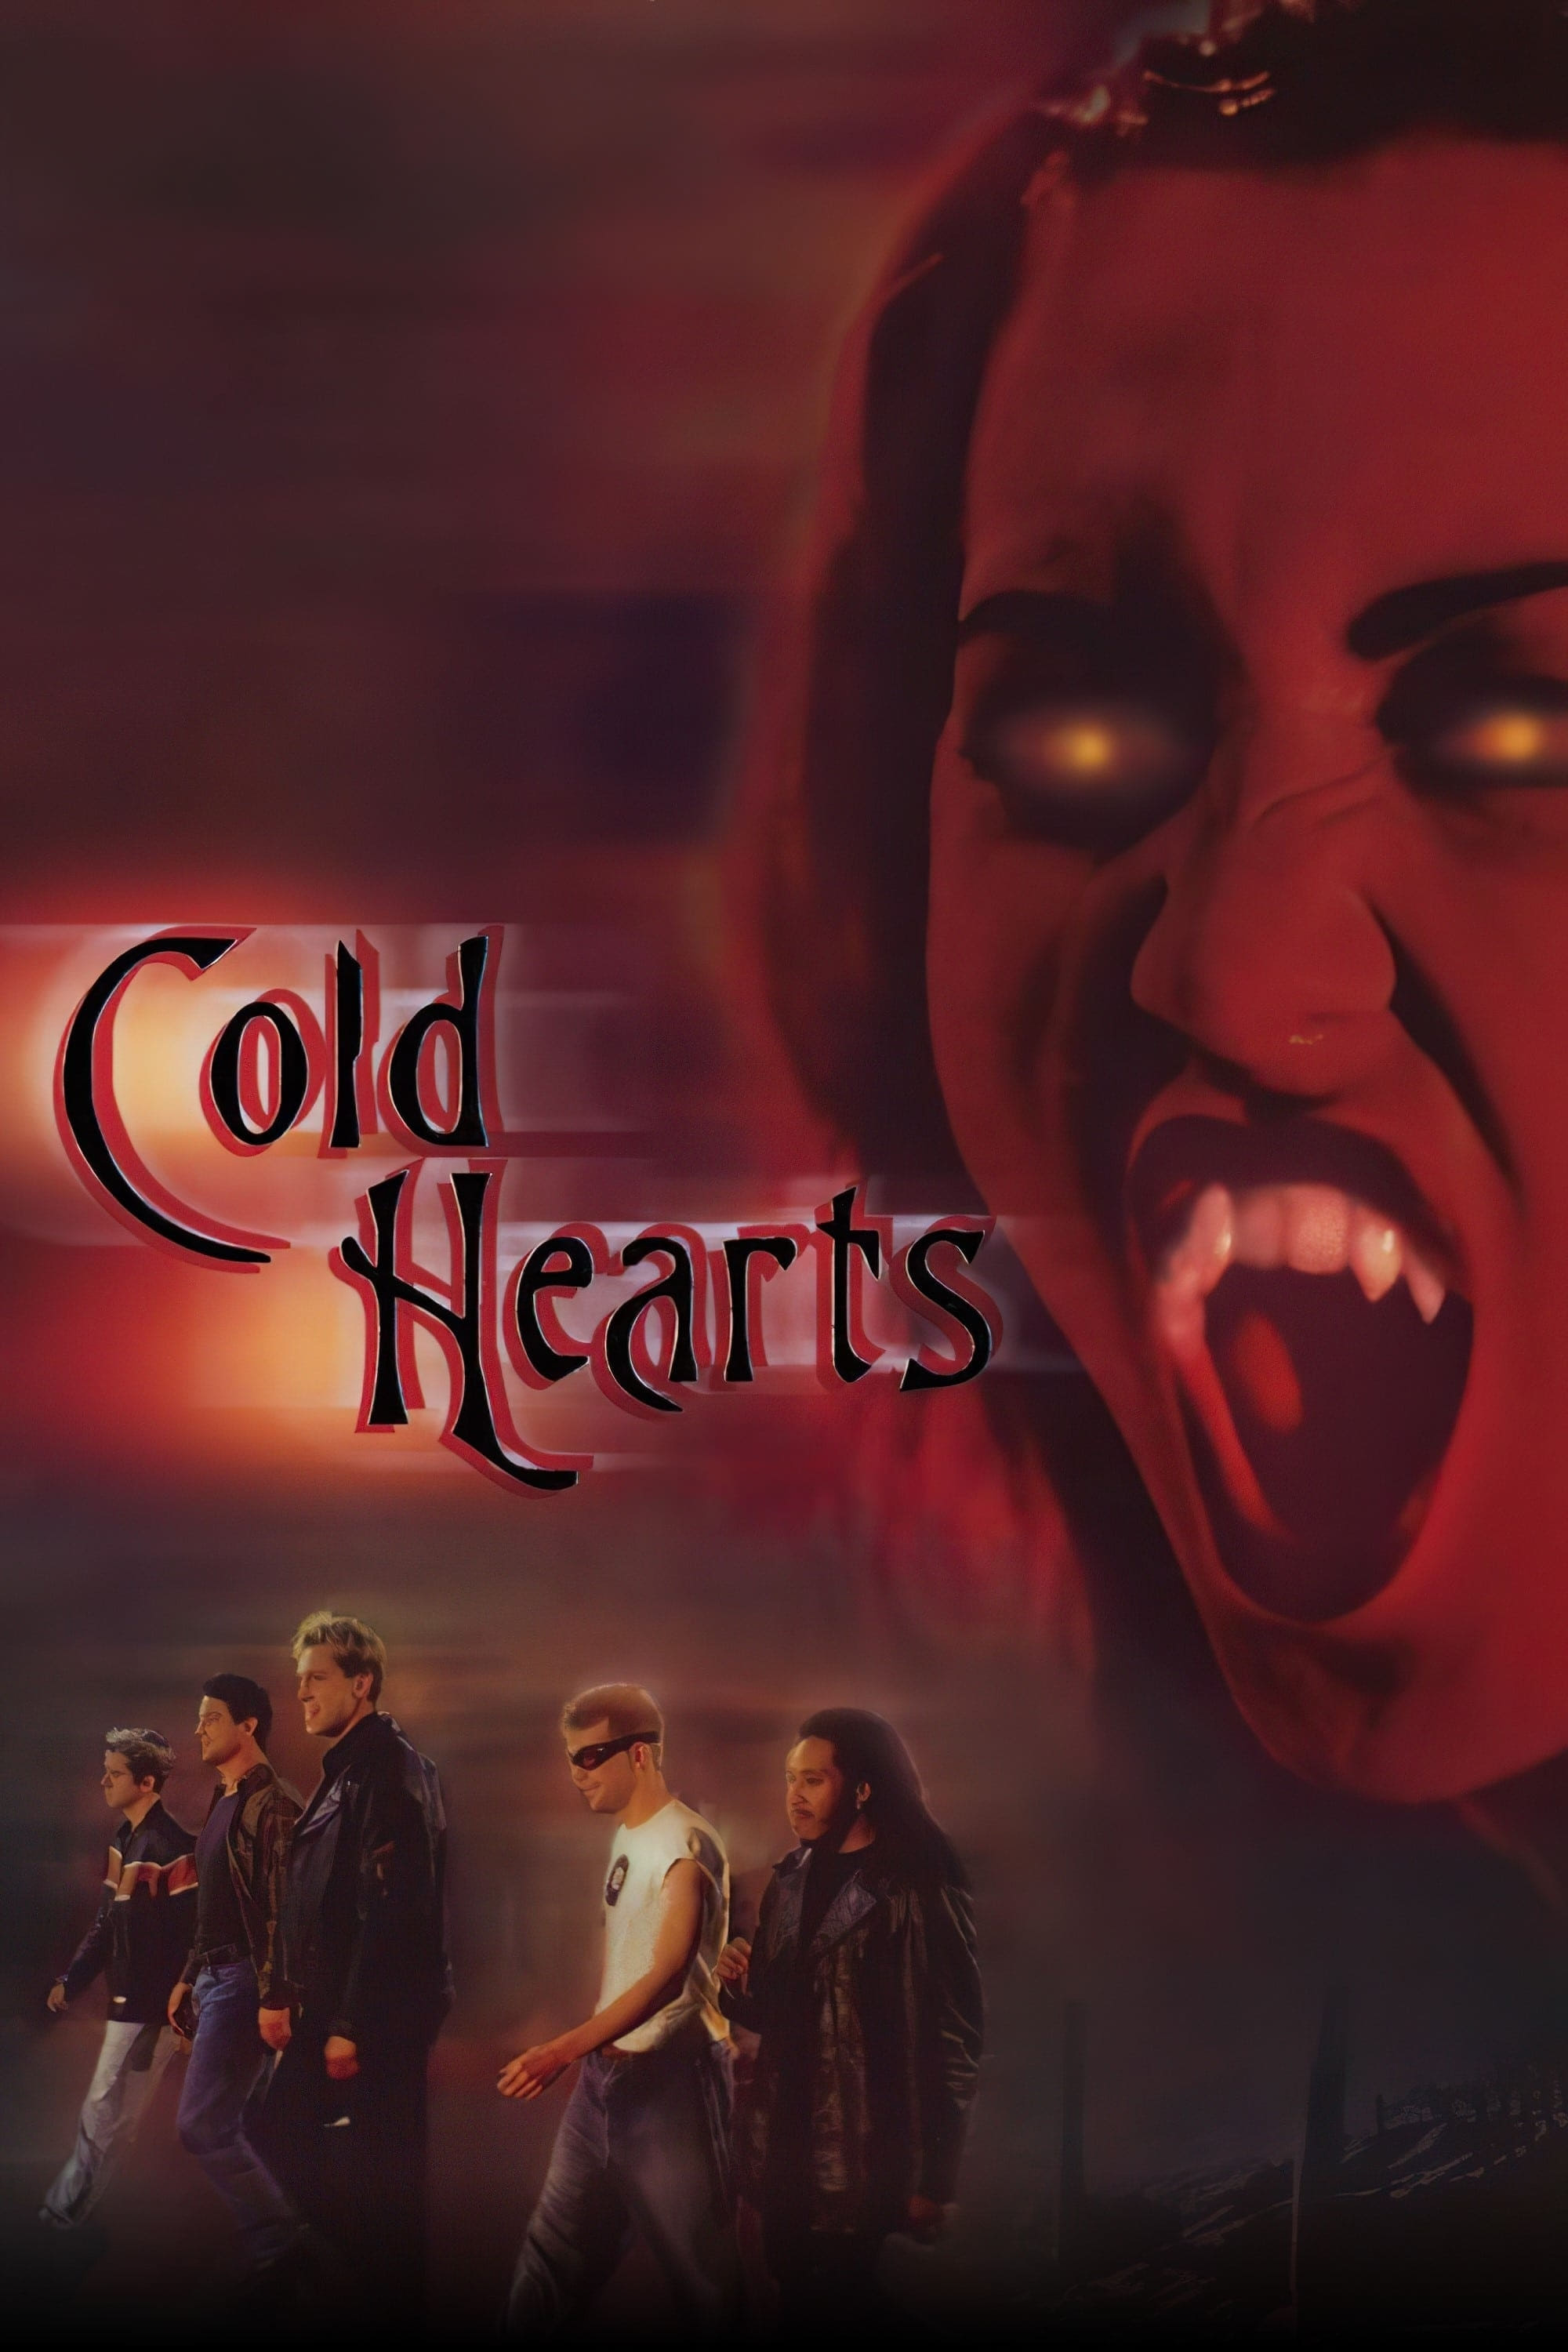 Cold Hearts - Die Ewigkeit beisst